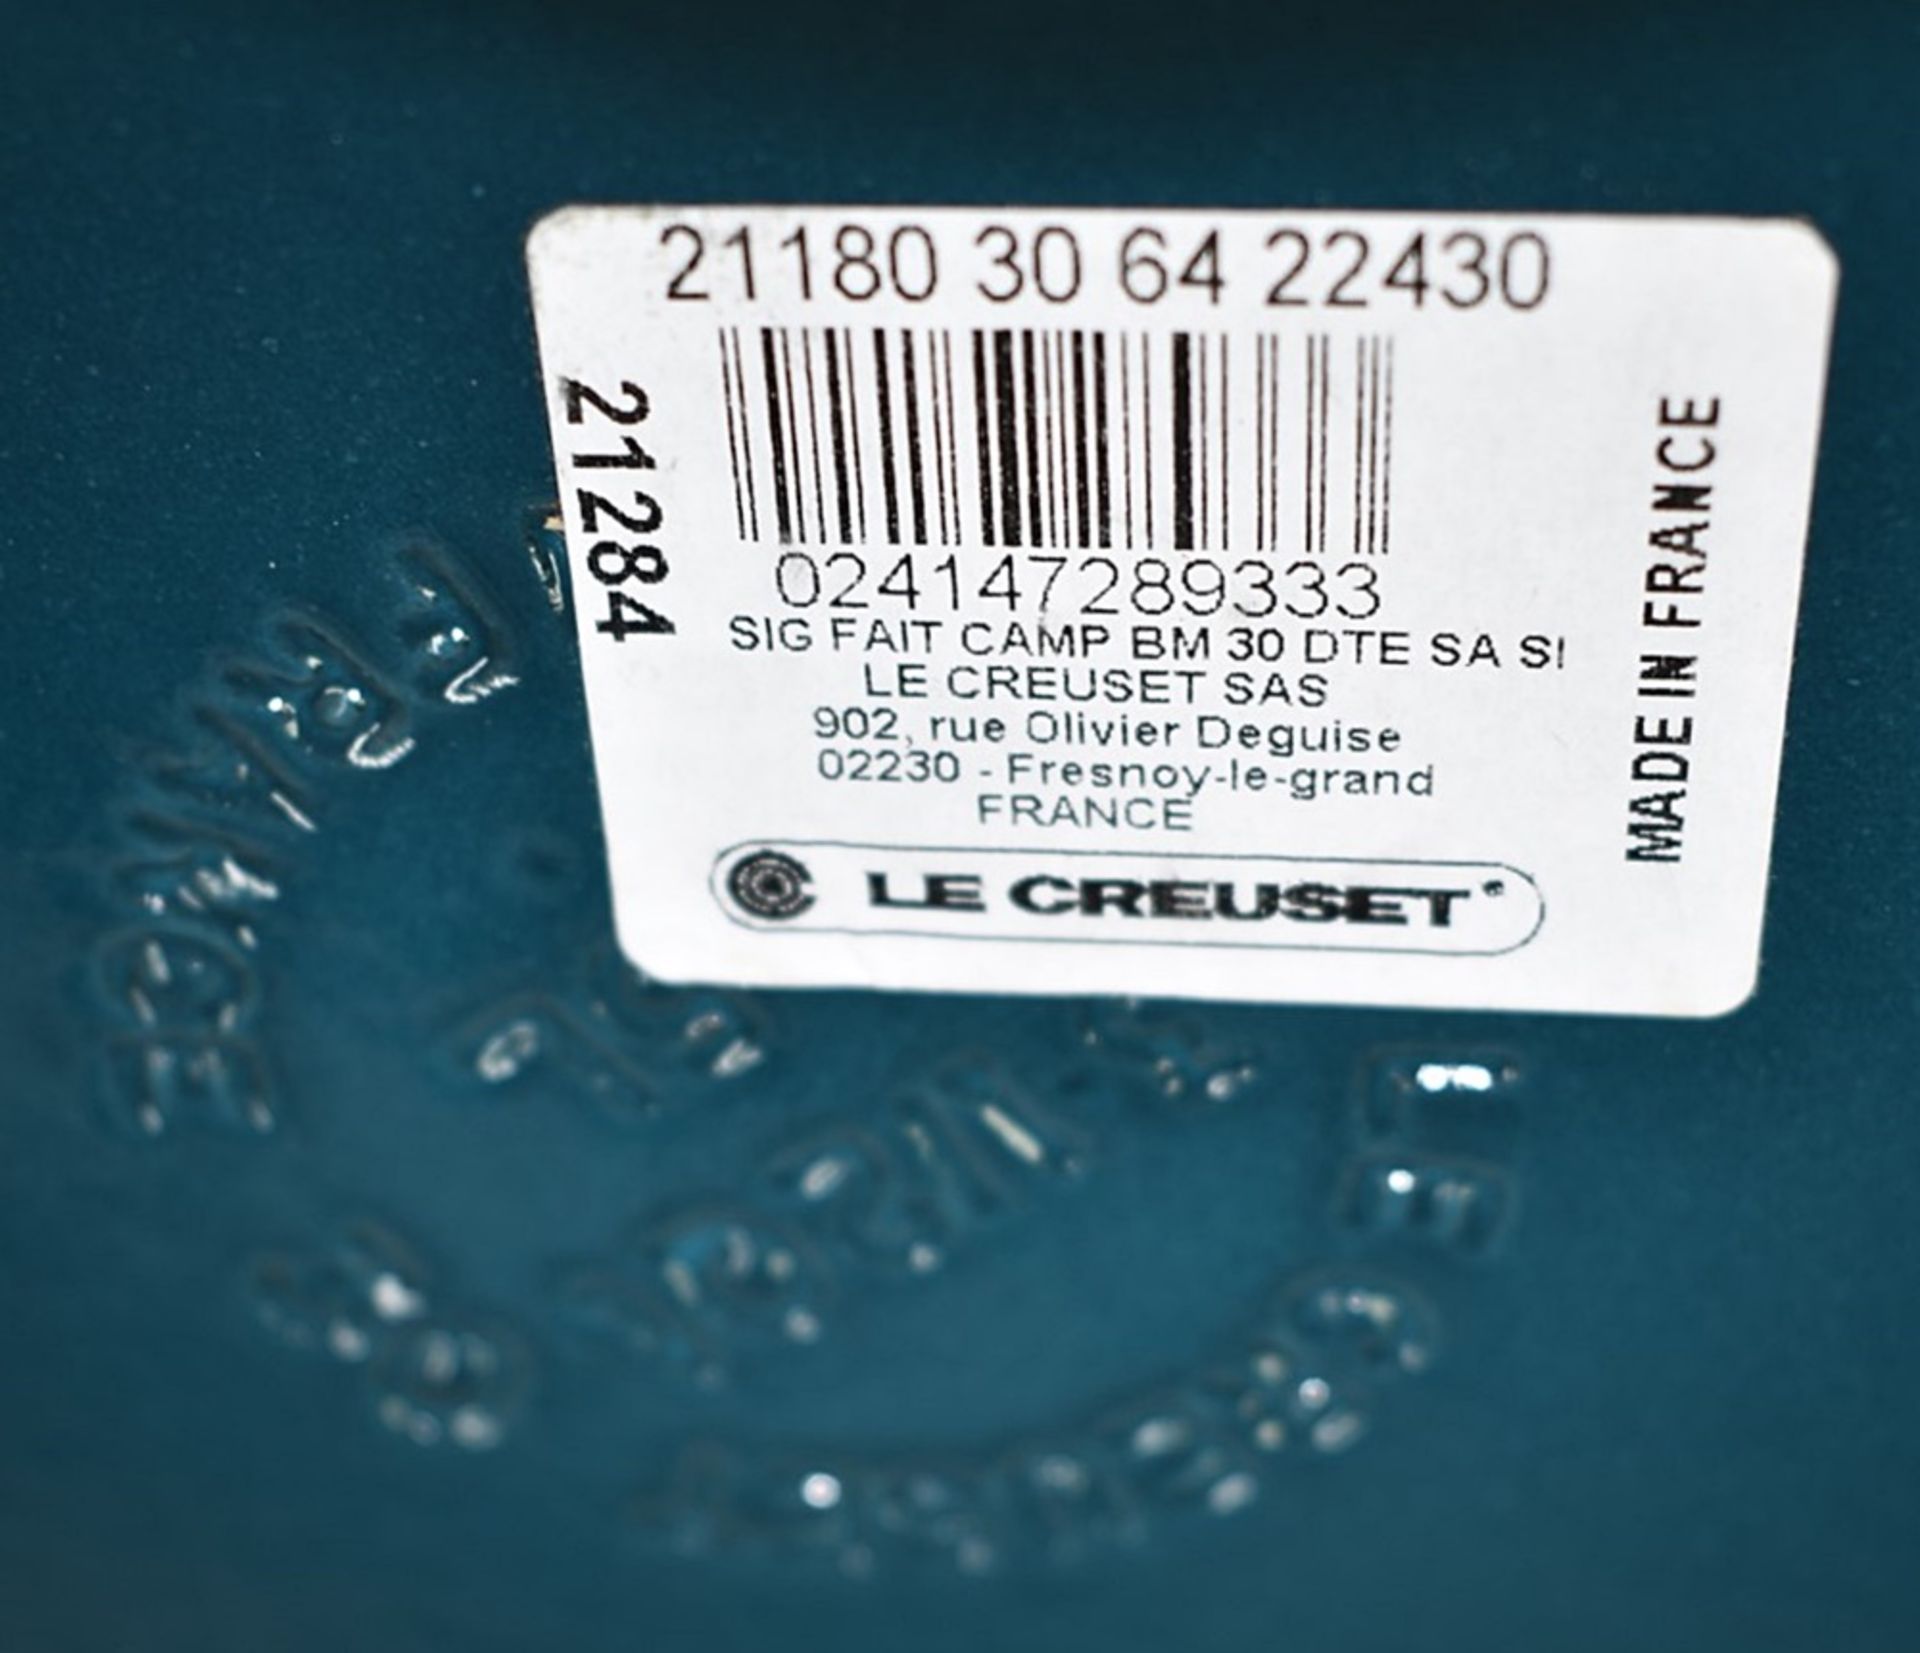 1 x LE CREUSET 'Signature' Enamelled Cast Iron Shallow Casserole Dish (30cm) - Original RRP £270.00 - Image 10 of 17